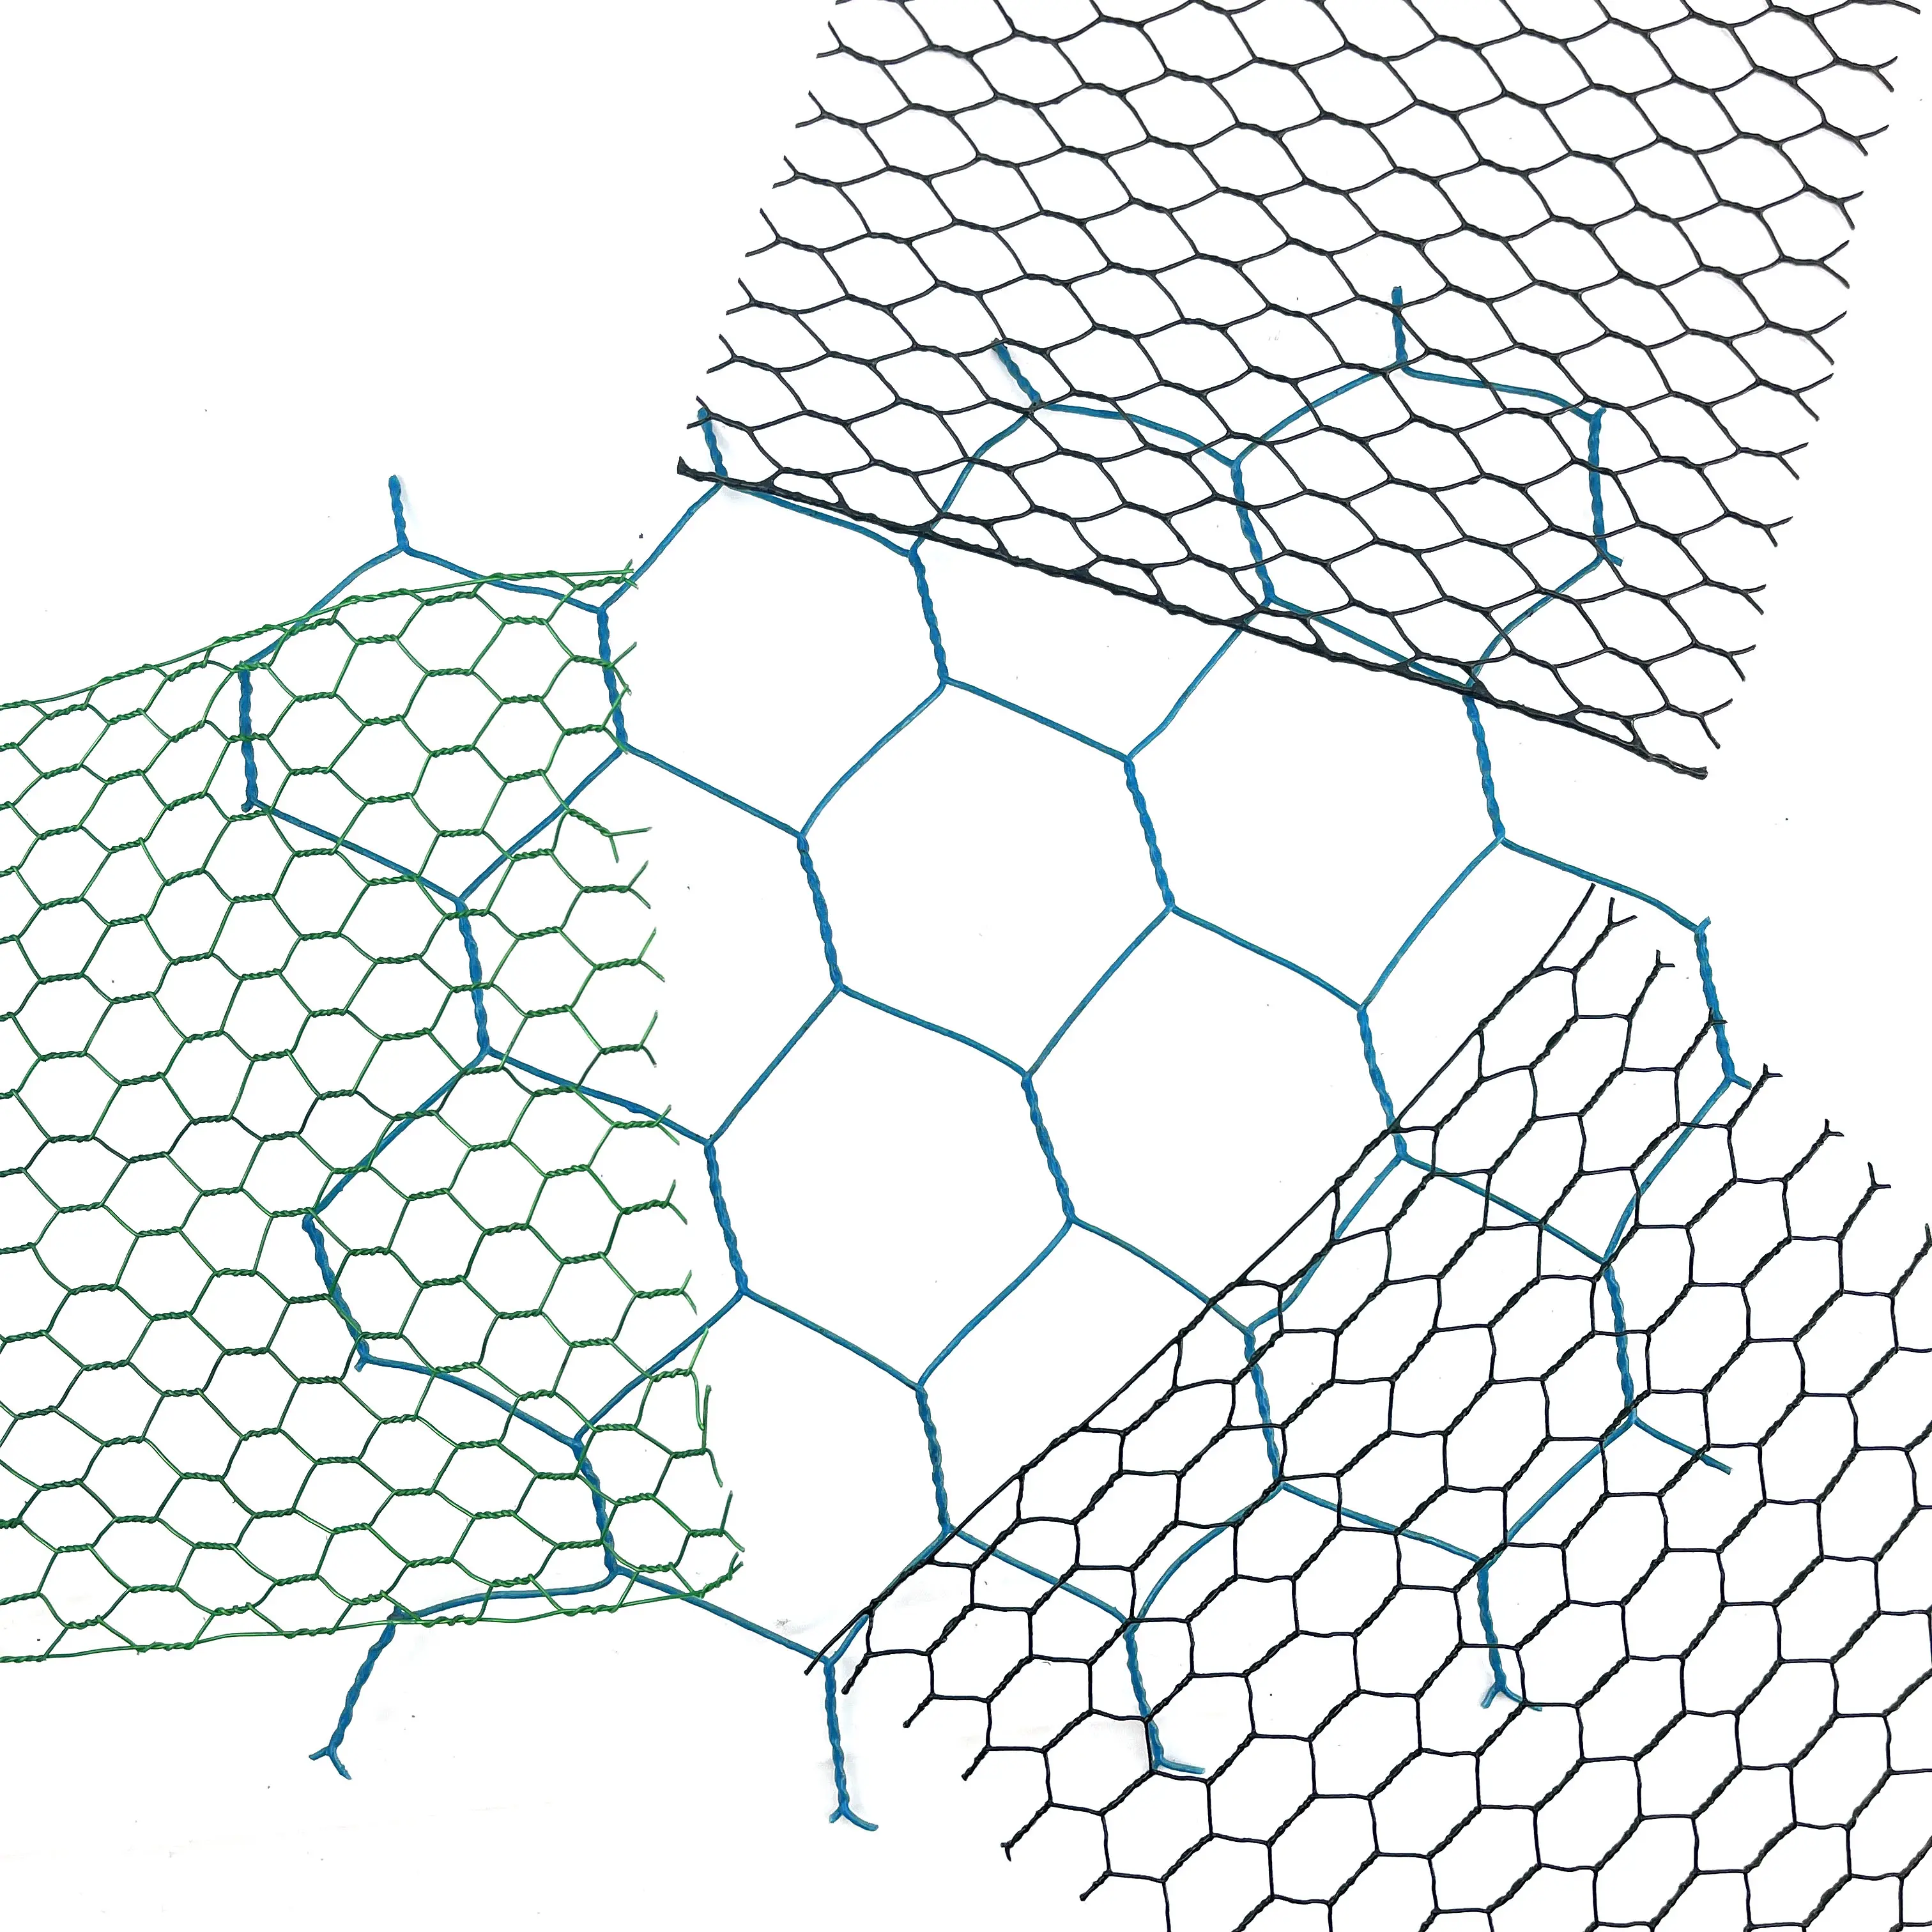 hexagonal chicken wire mesh(netting) and galvanized hexagonal wire netting hexagonal chicken wire netting